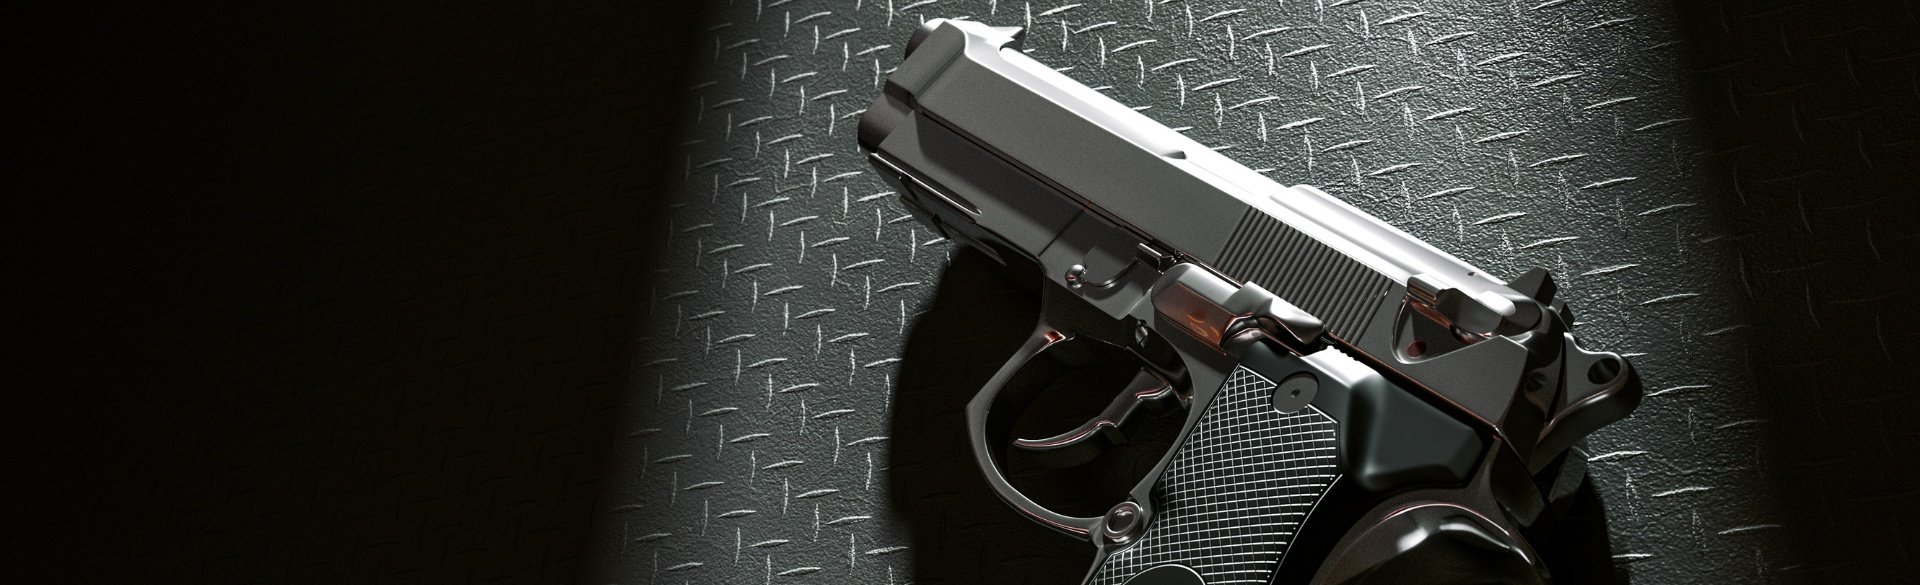 Gun against dark background